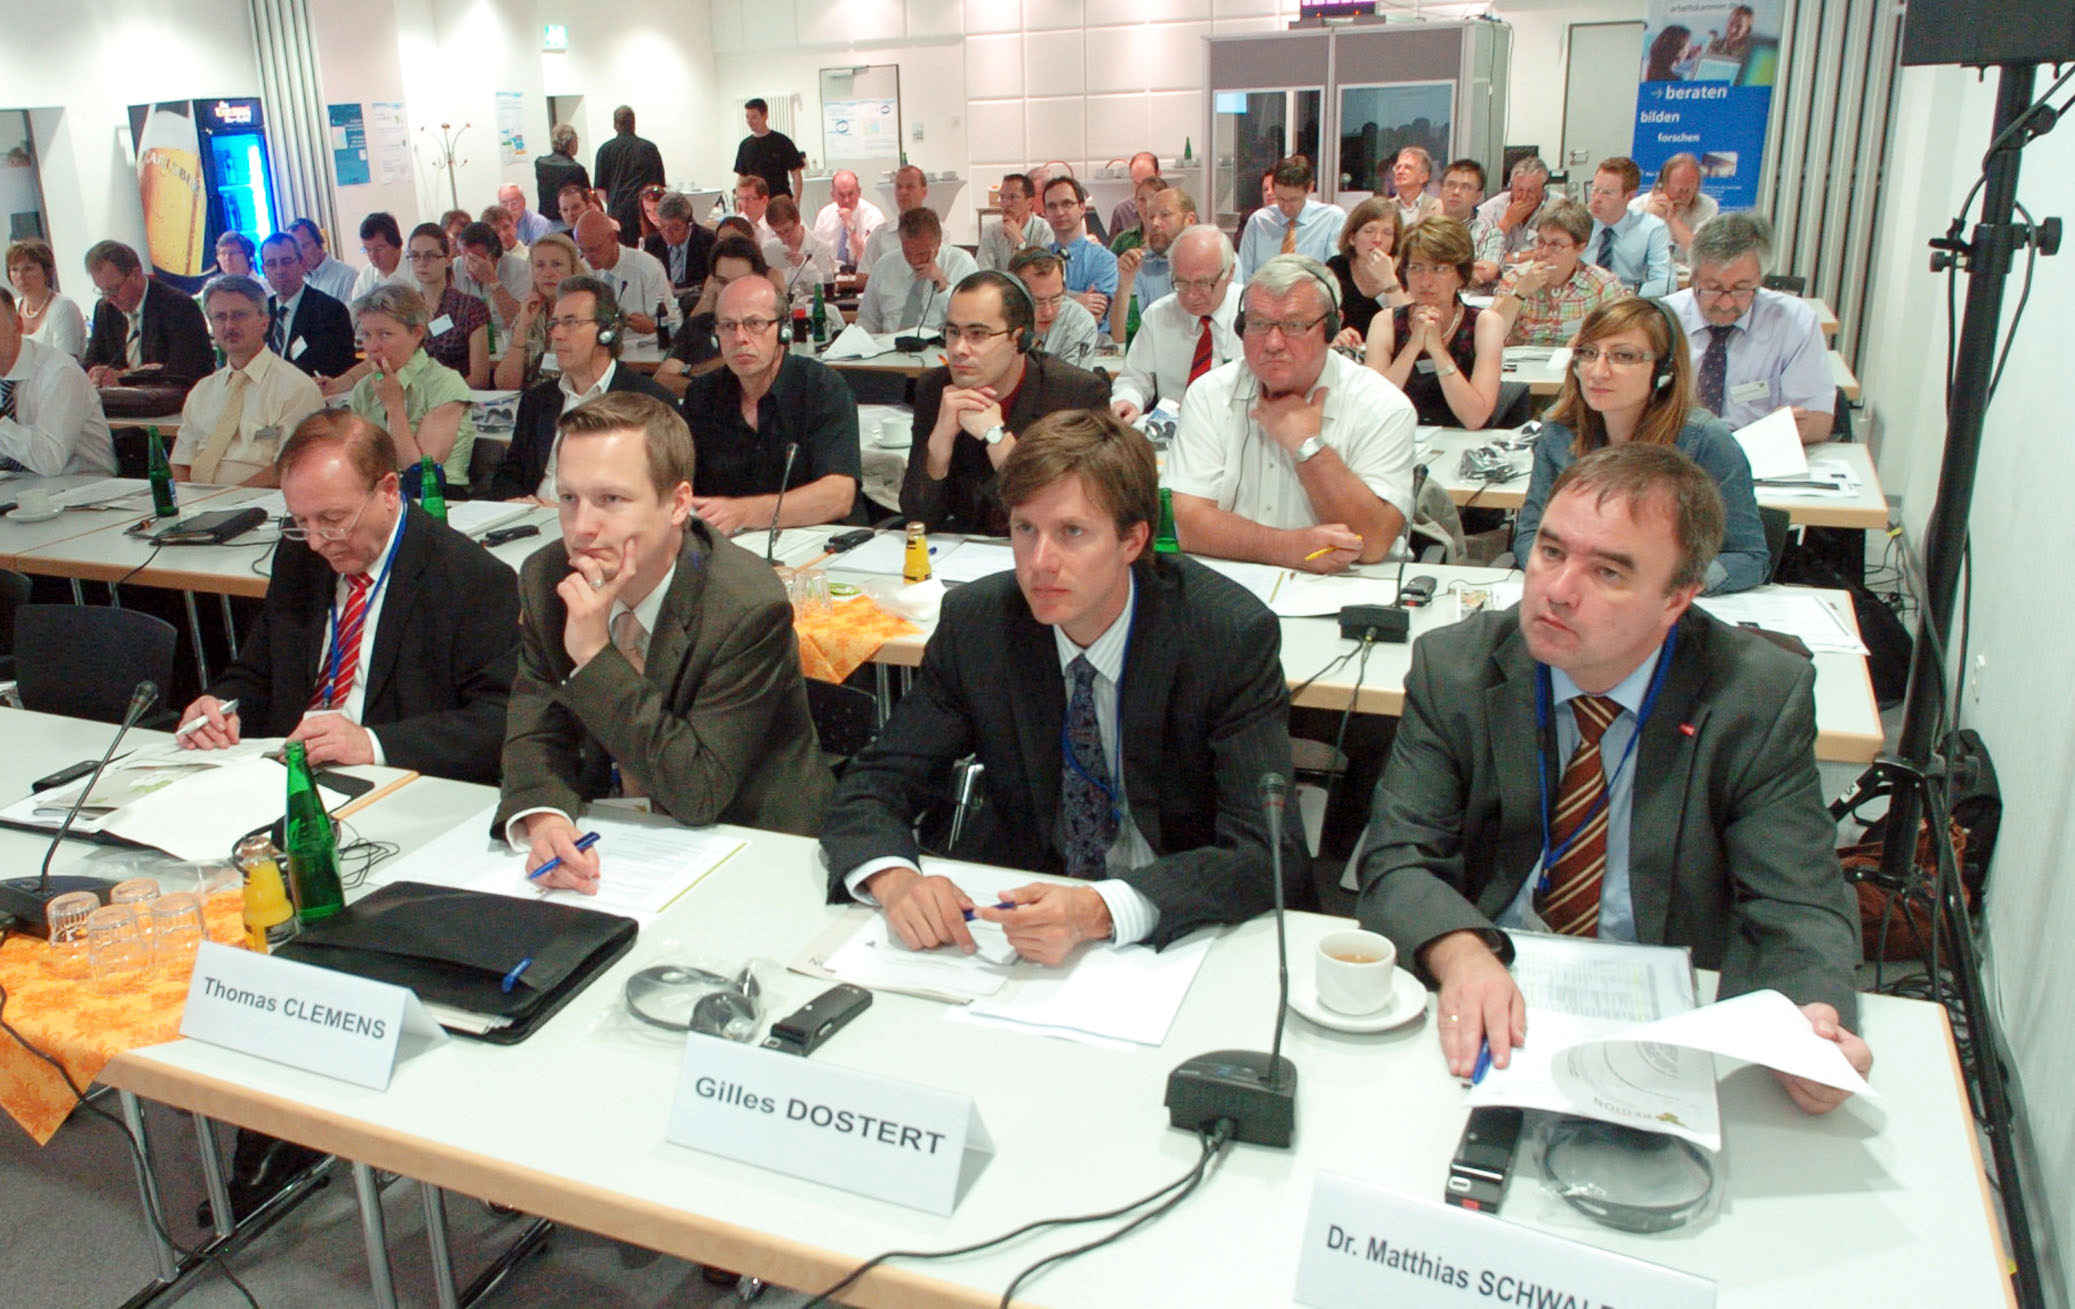 Parlamentarierrats am 12. März 2010 sowie am 17. September 2010. Zudem wurden die Empfehlungen im Rahmen der Öffentlichkeitsarbeit einem breiten Publikumskreis zugänglich gemacht.